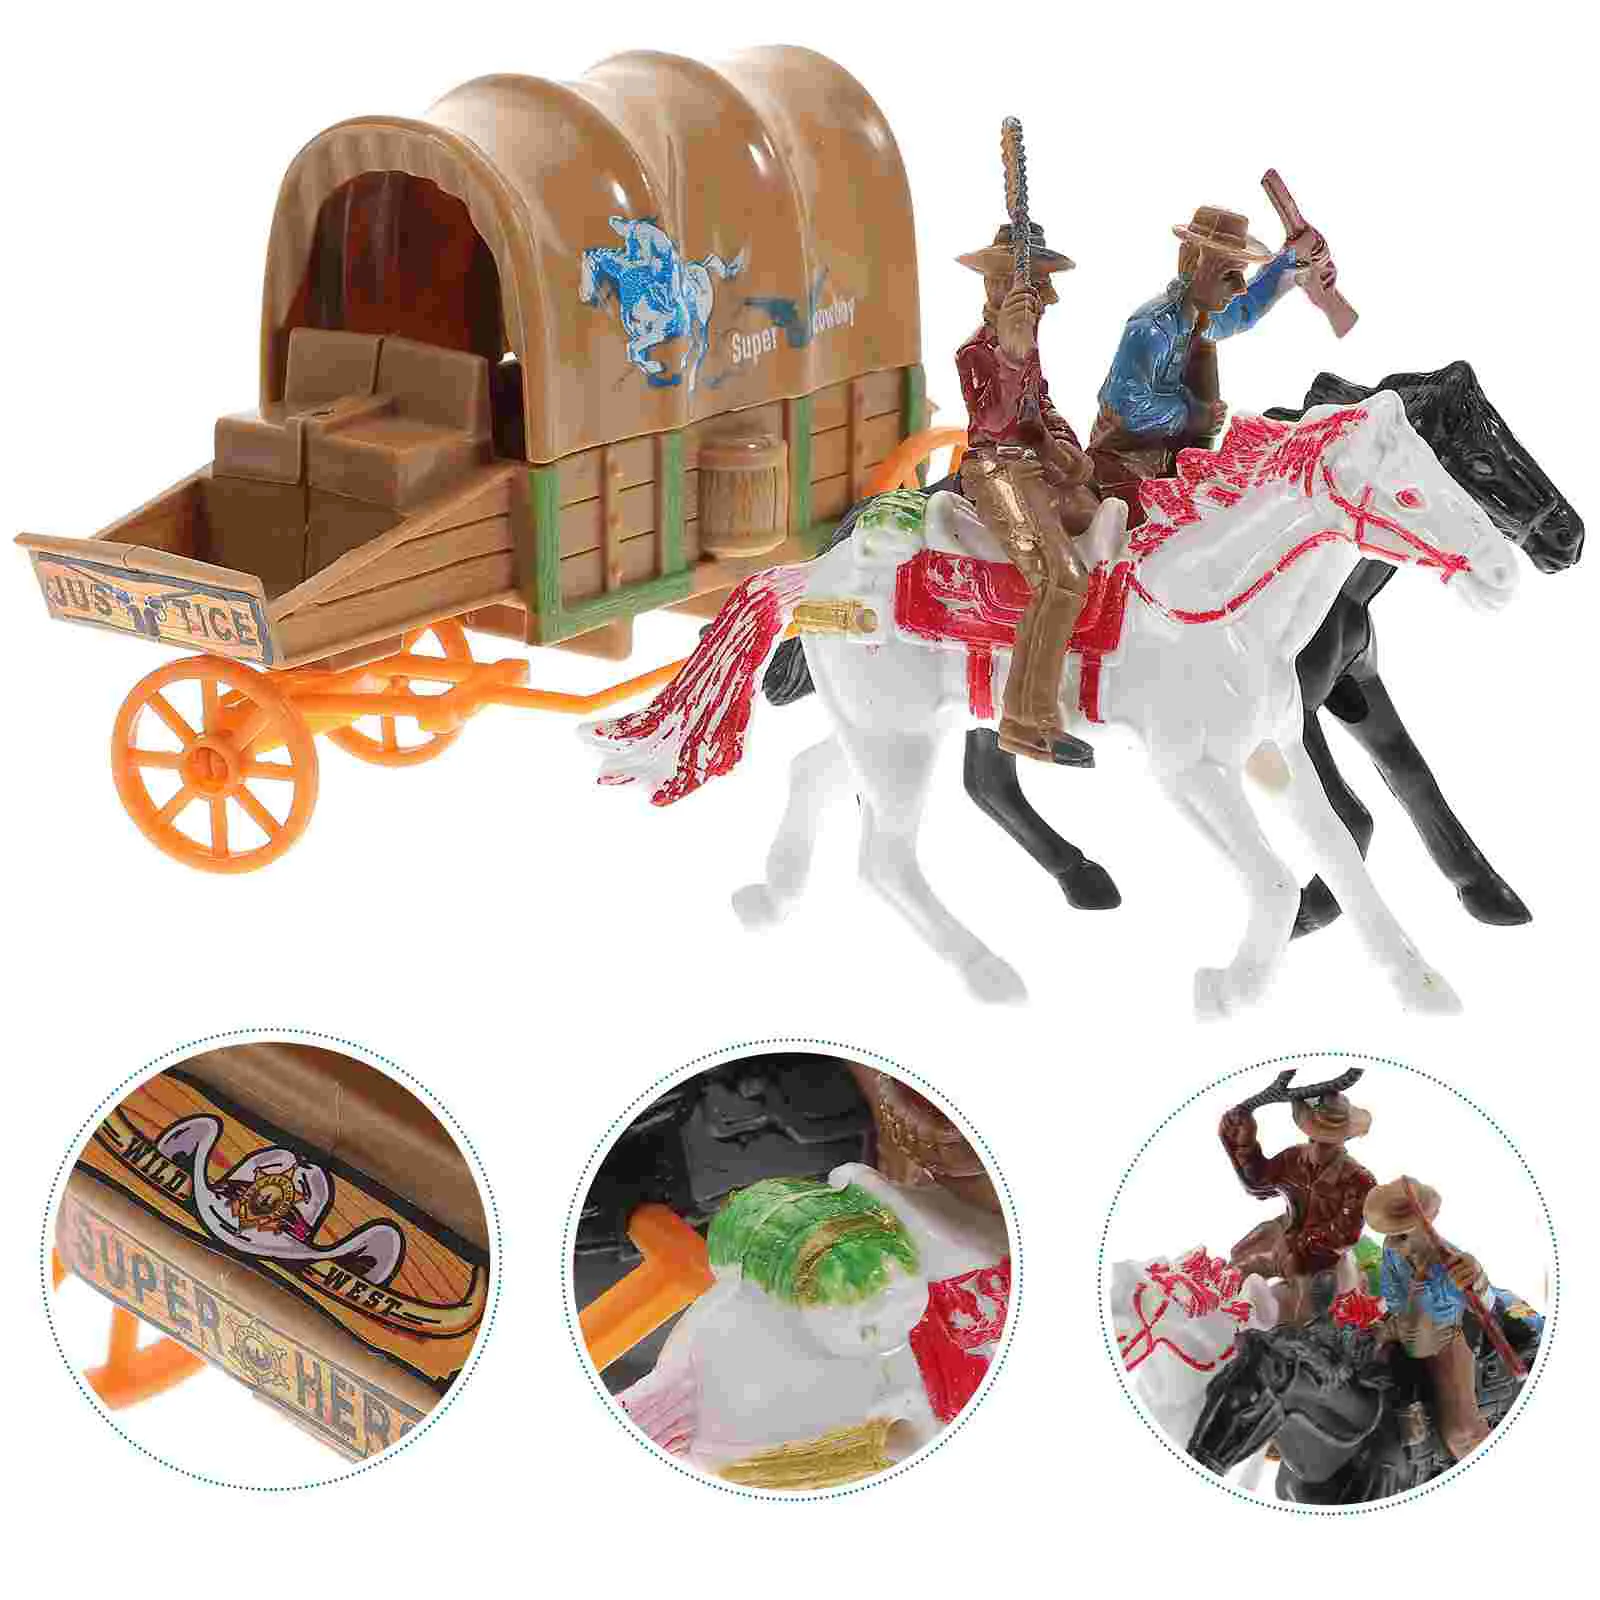 

Cowboy Culture Toys Cowboy Action Figure Farm World Cowboy Movable Wild West Cowboys Plastic Cowboy Figurines Toys